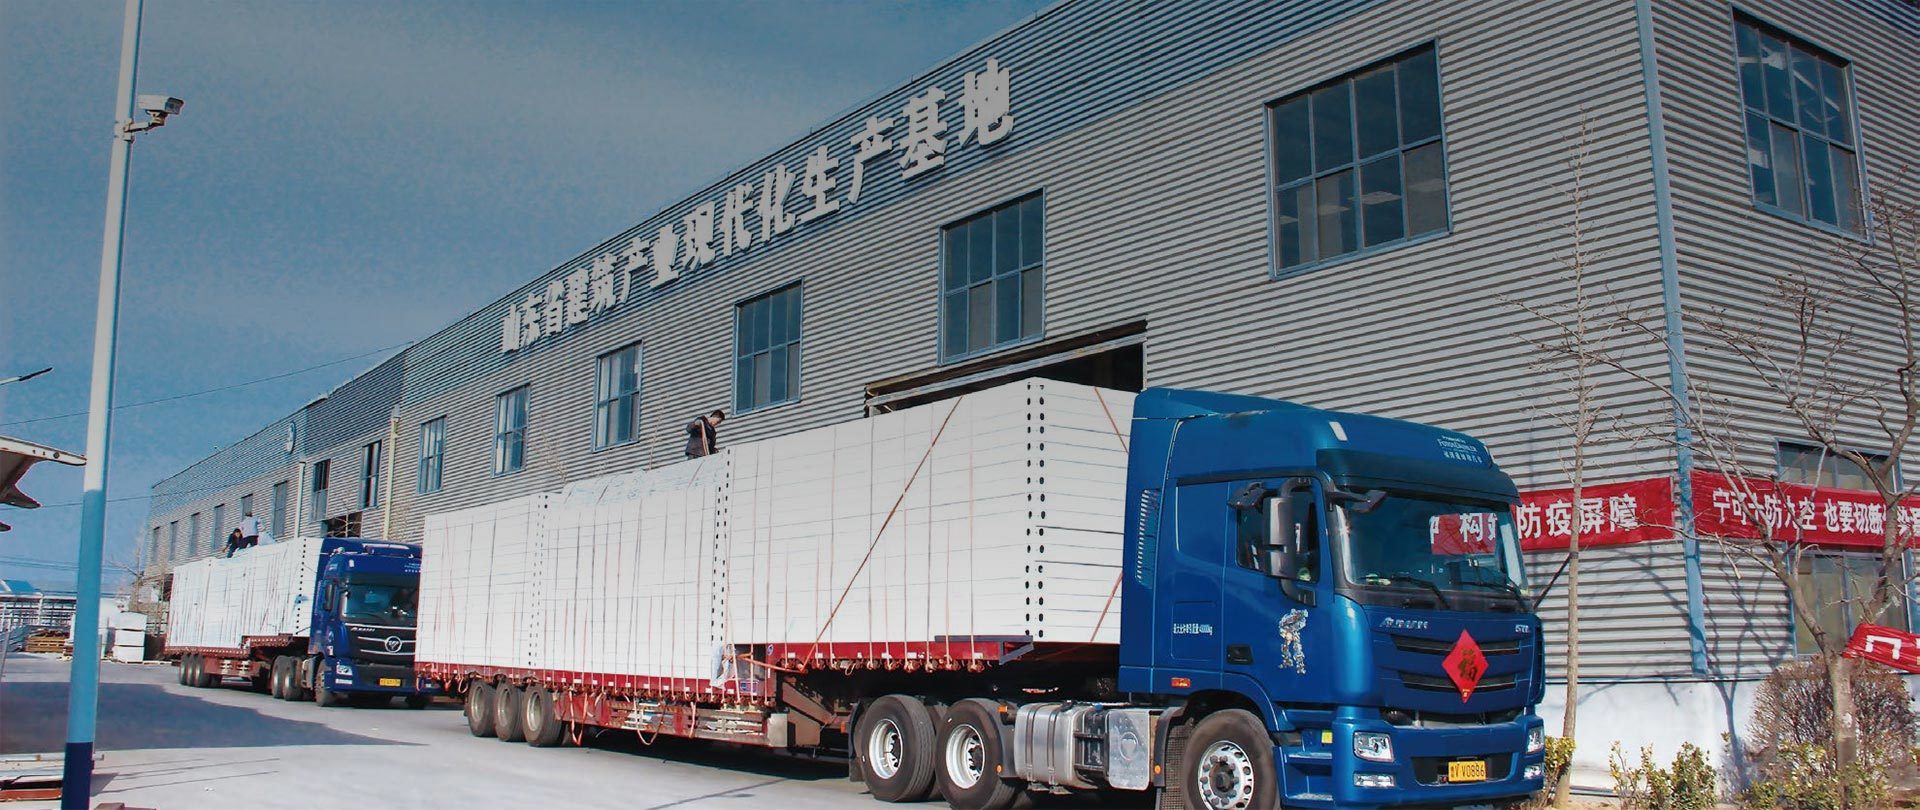 —Shandong Wecheer New Building Materials Co., Ltd.